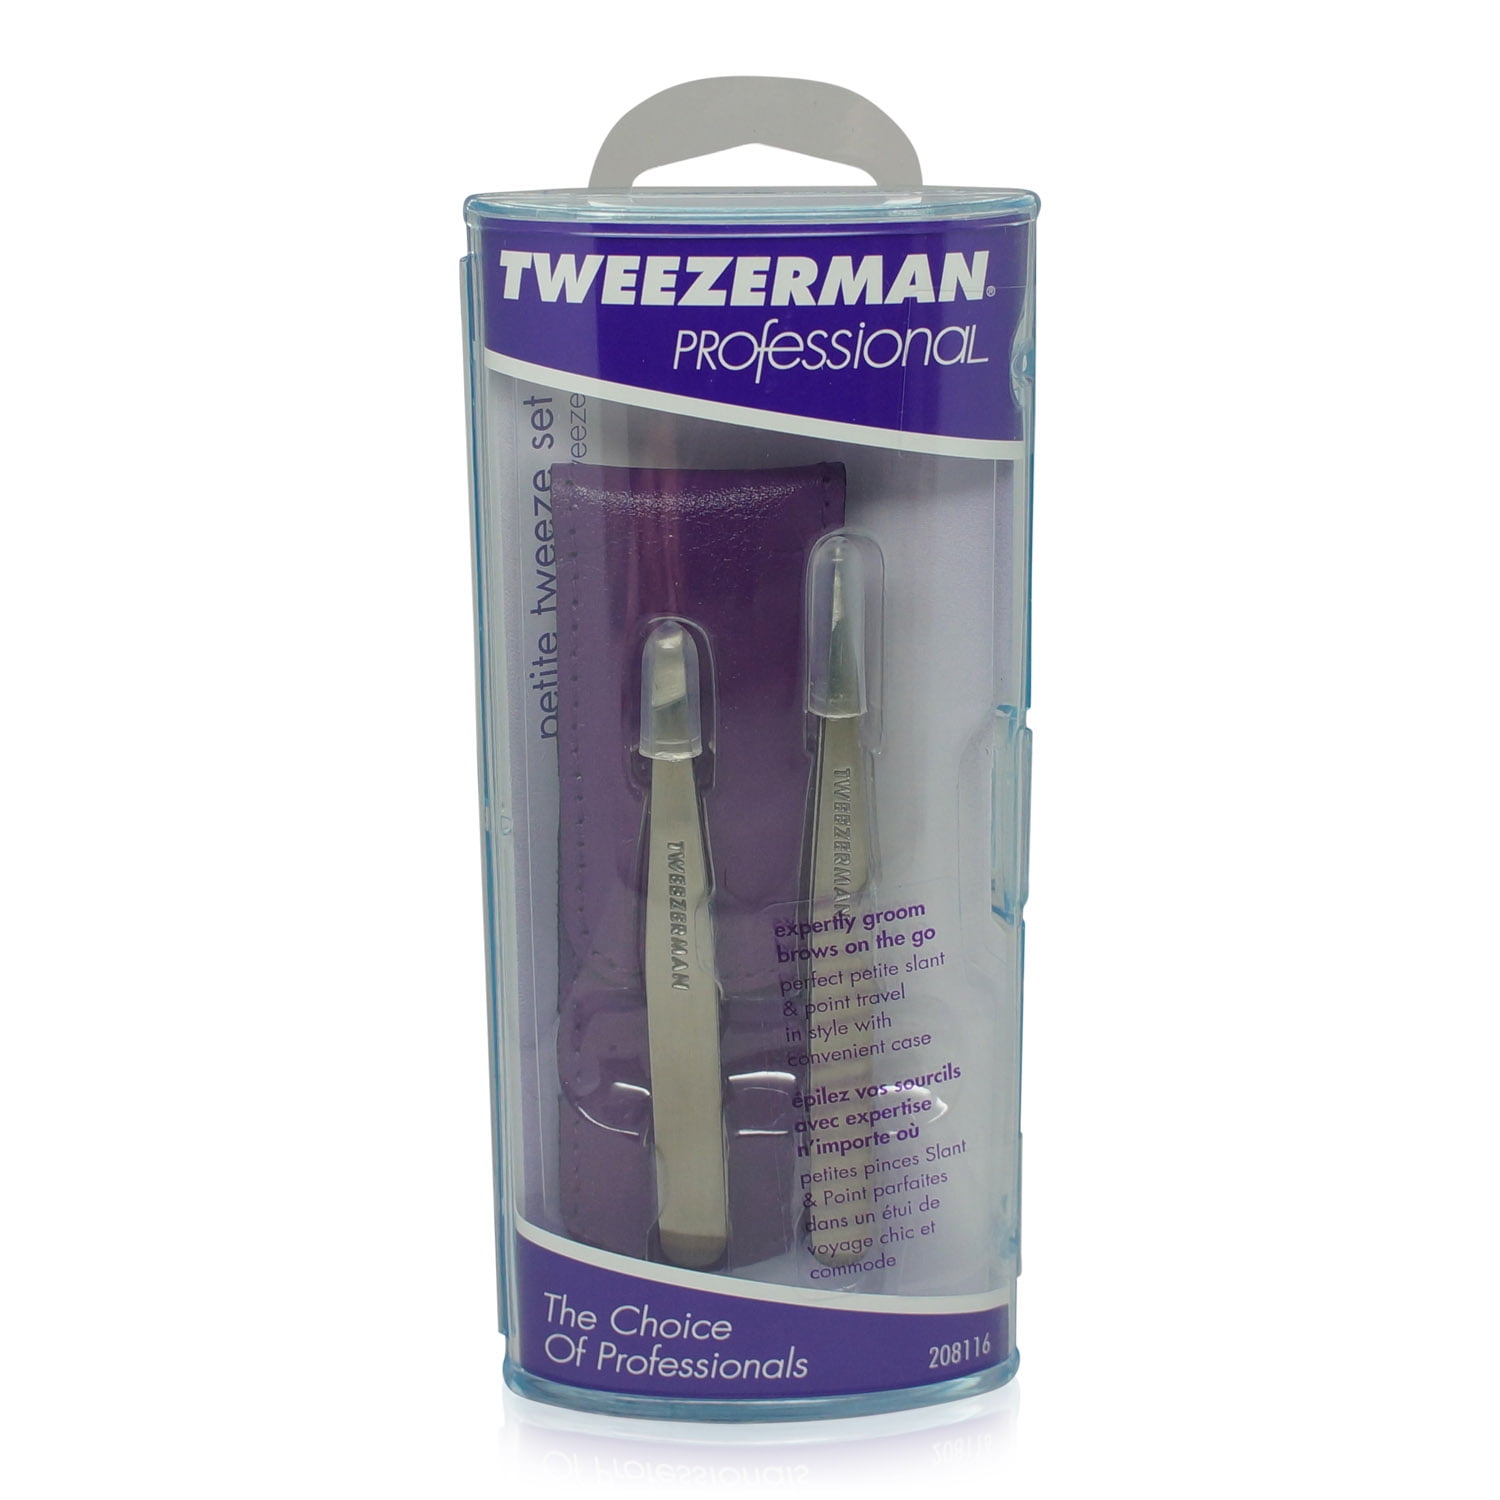 Case Tweeze Petite Set with Tweezerman